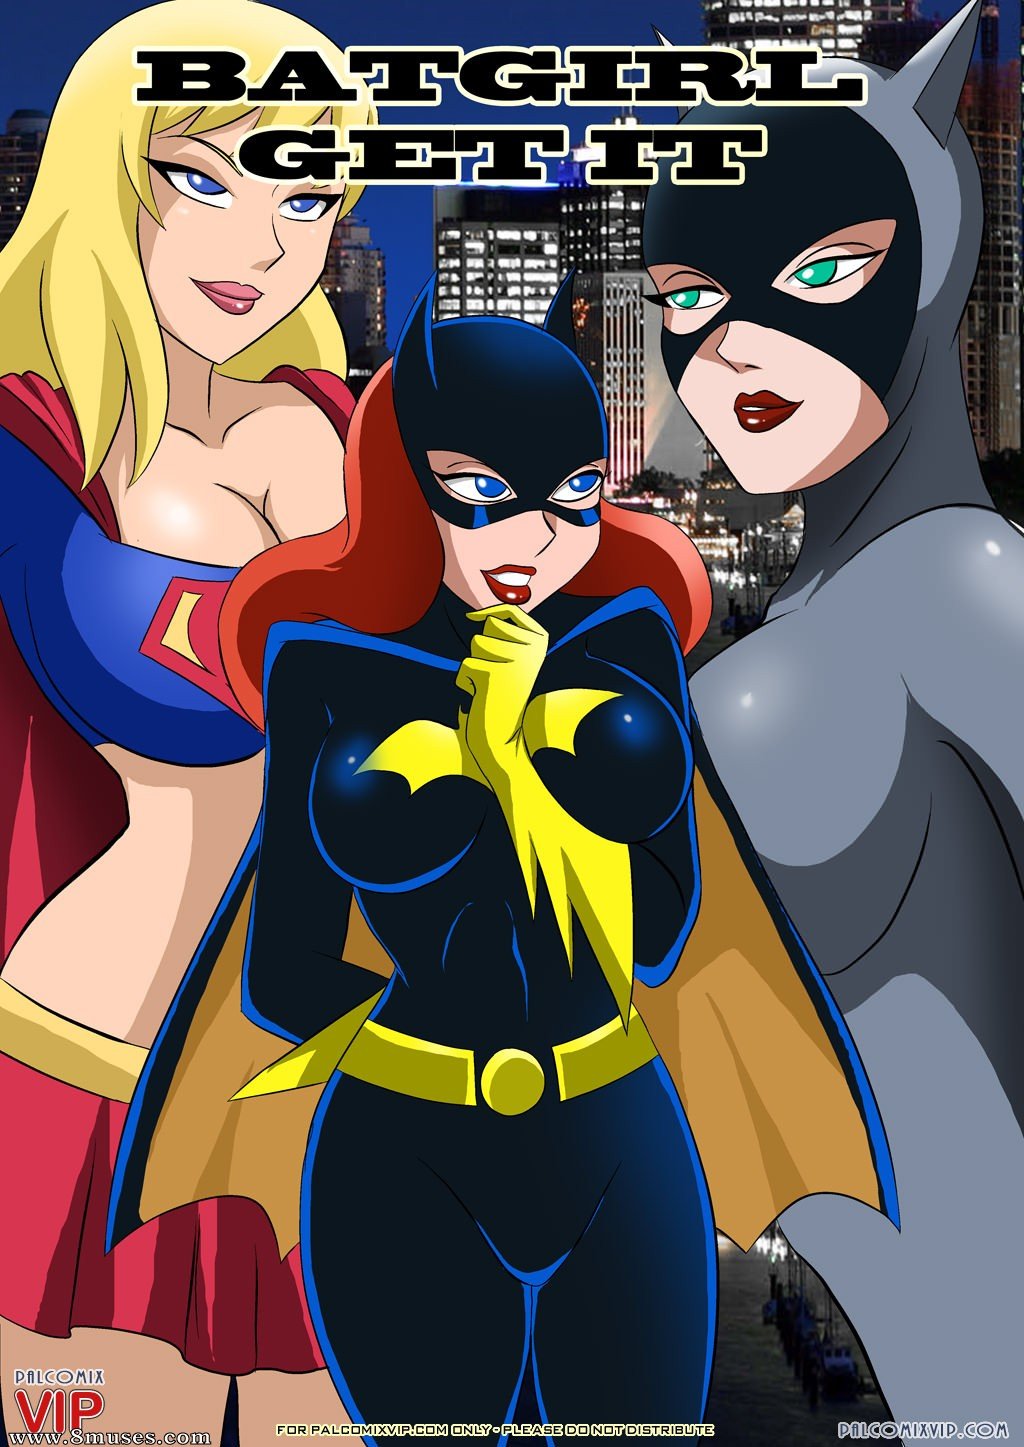 1024px x 1447px - Batgirl-Get It porn comic (justice league). Big breasts porn comics.